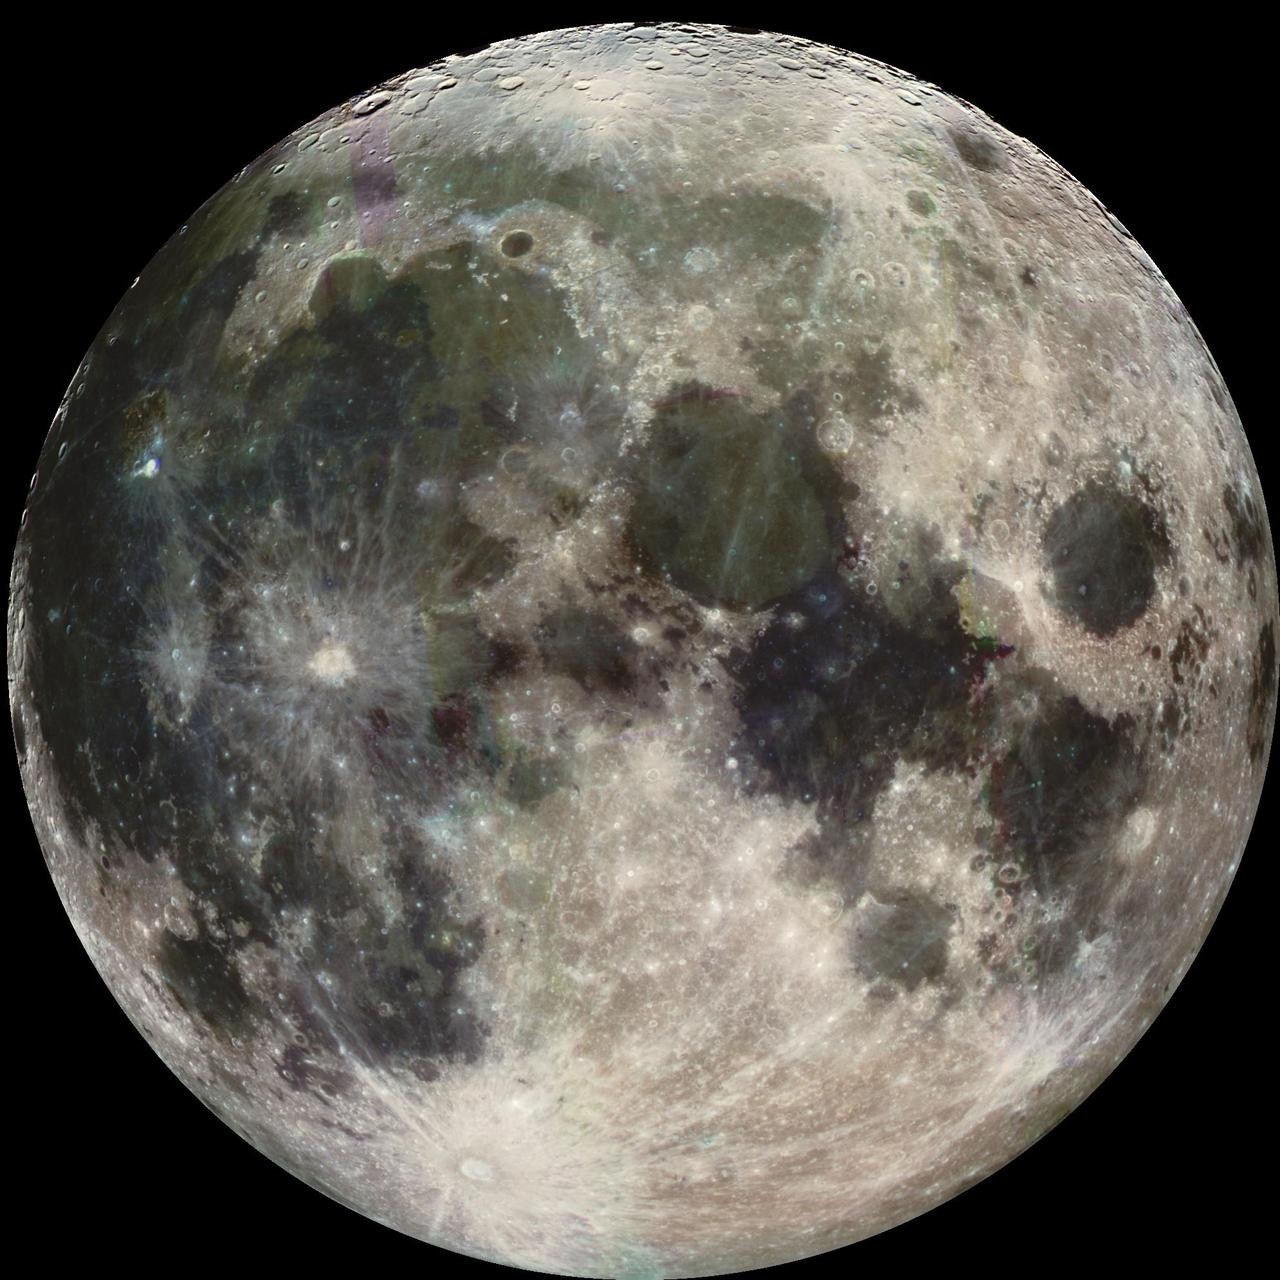 A espaçonave Galileo da Nasa tirou esta imagem da Lua em 7 de dezembro de 1992 (Foto: Nasa/JPL/USGS)